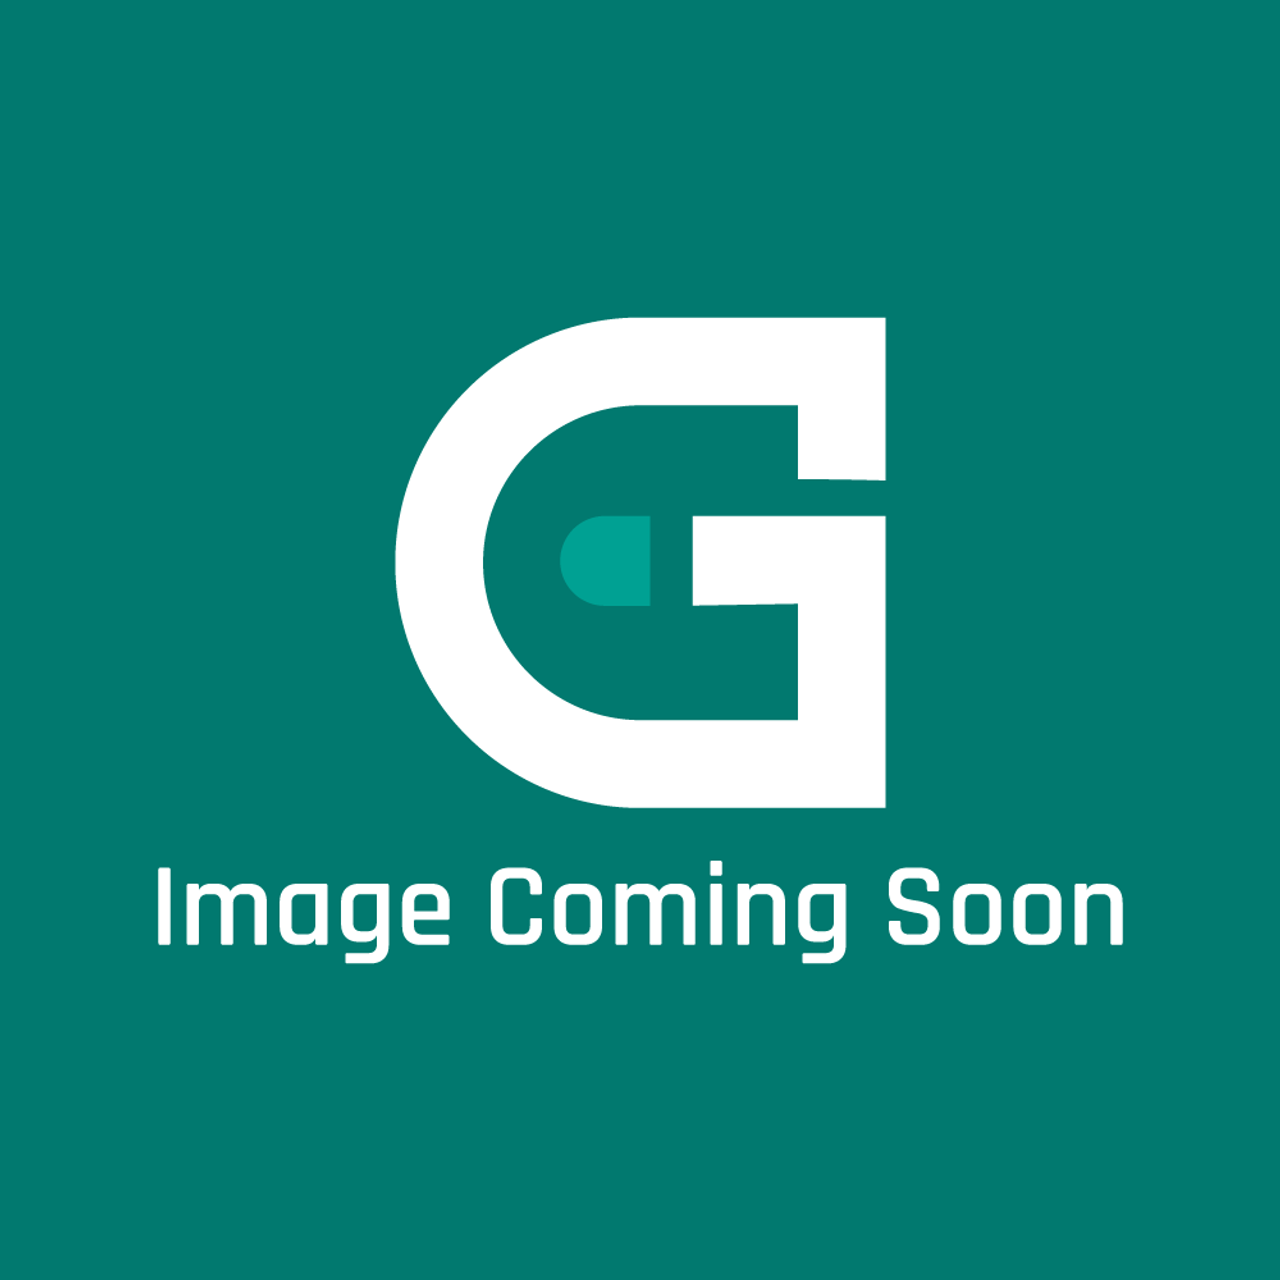 Groen Z000286 - Head Burner Casting - Image Coming Soon!